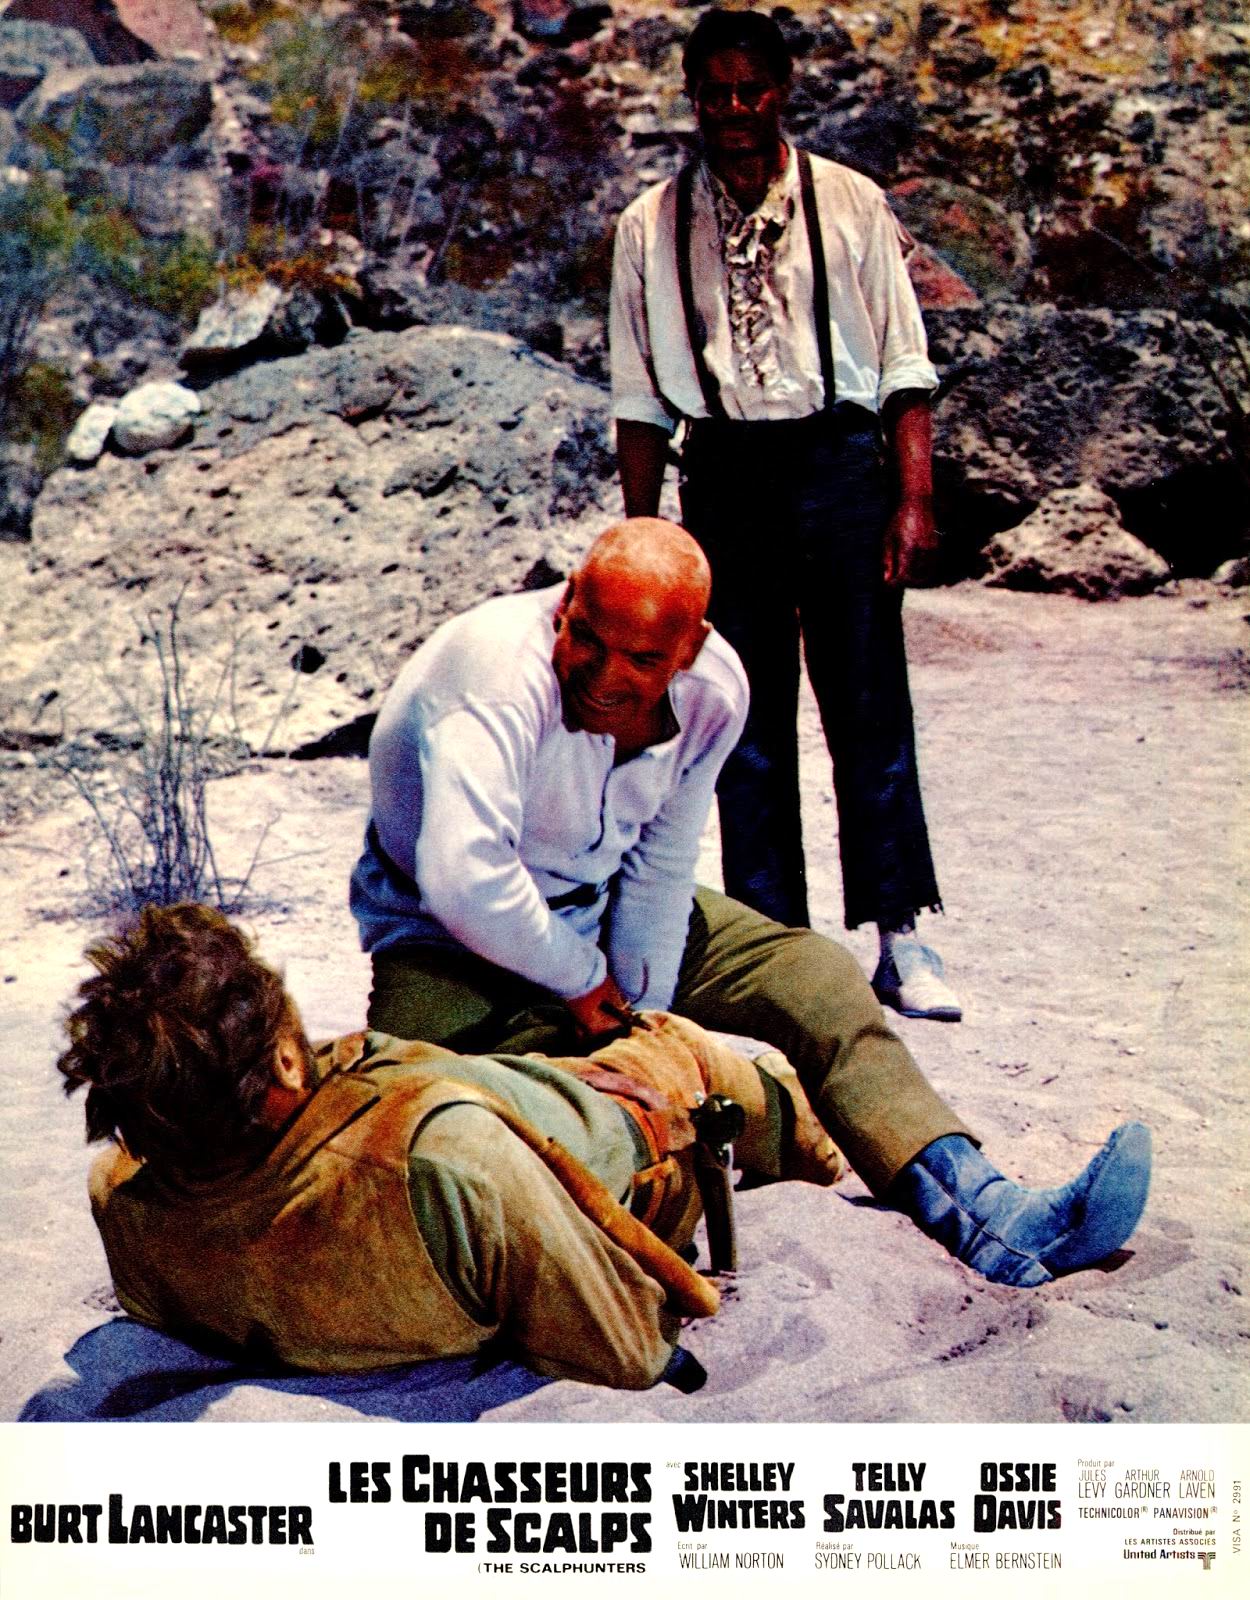 Les chasseurs de scalps (1967) Sydney Pollack - The scalphunters (03.1967 / 05.1967)